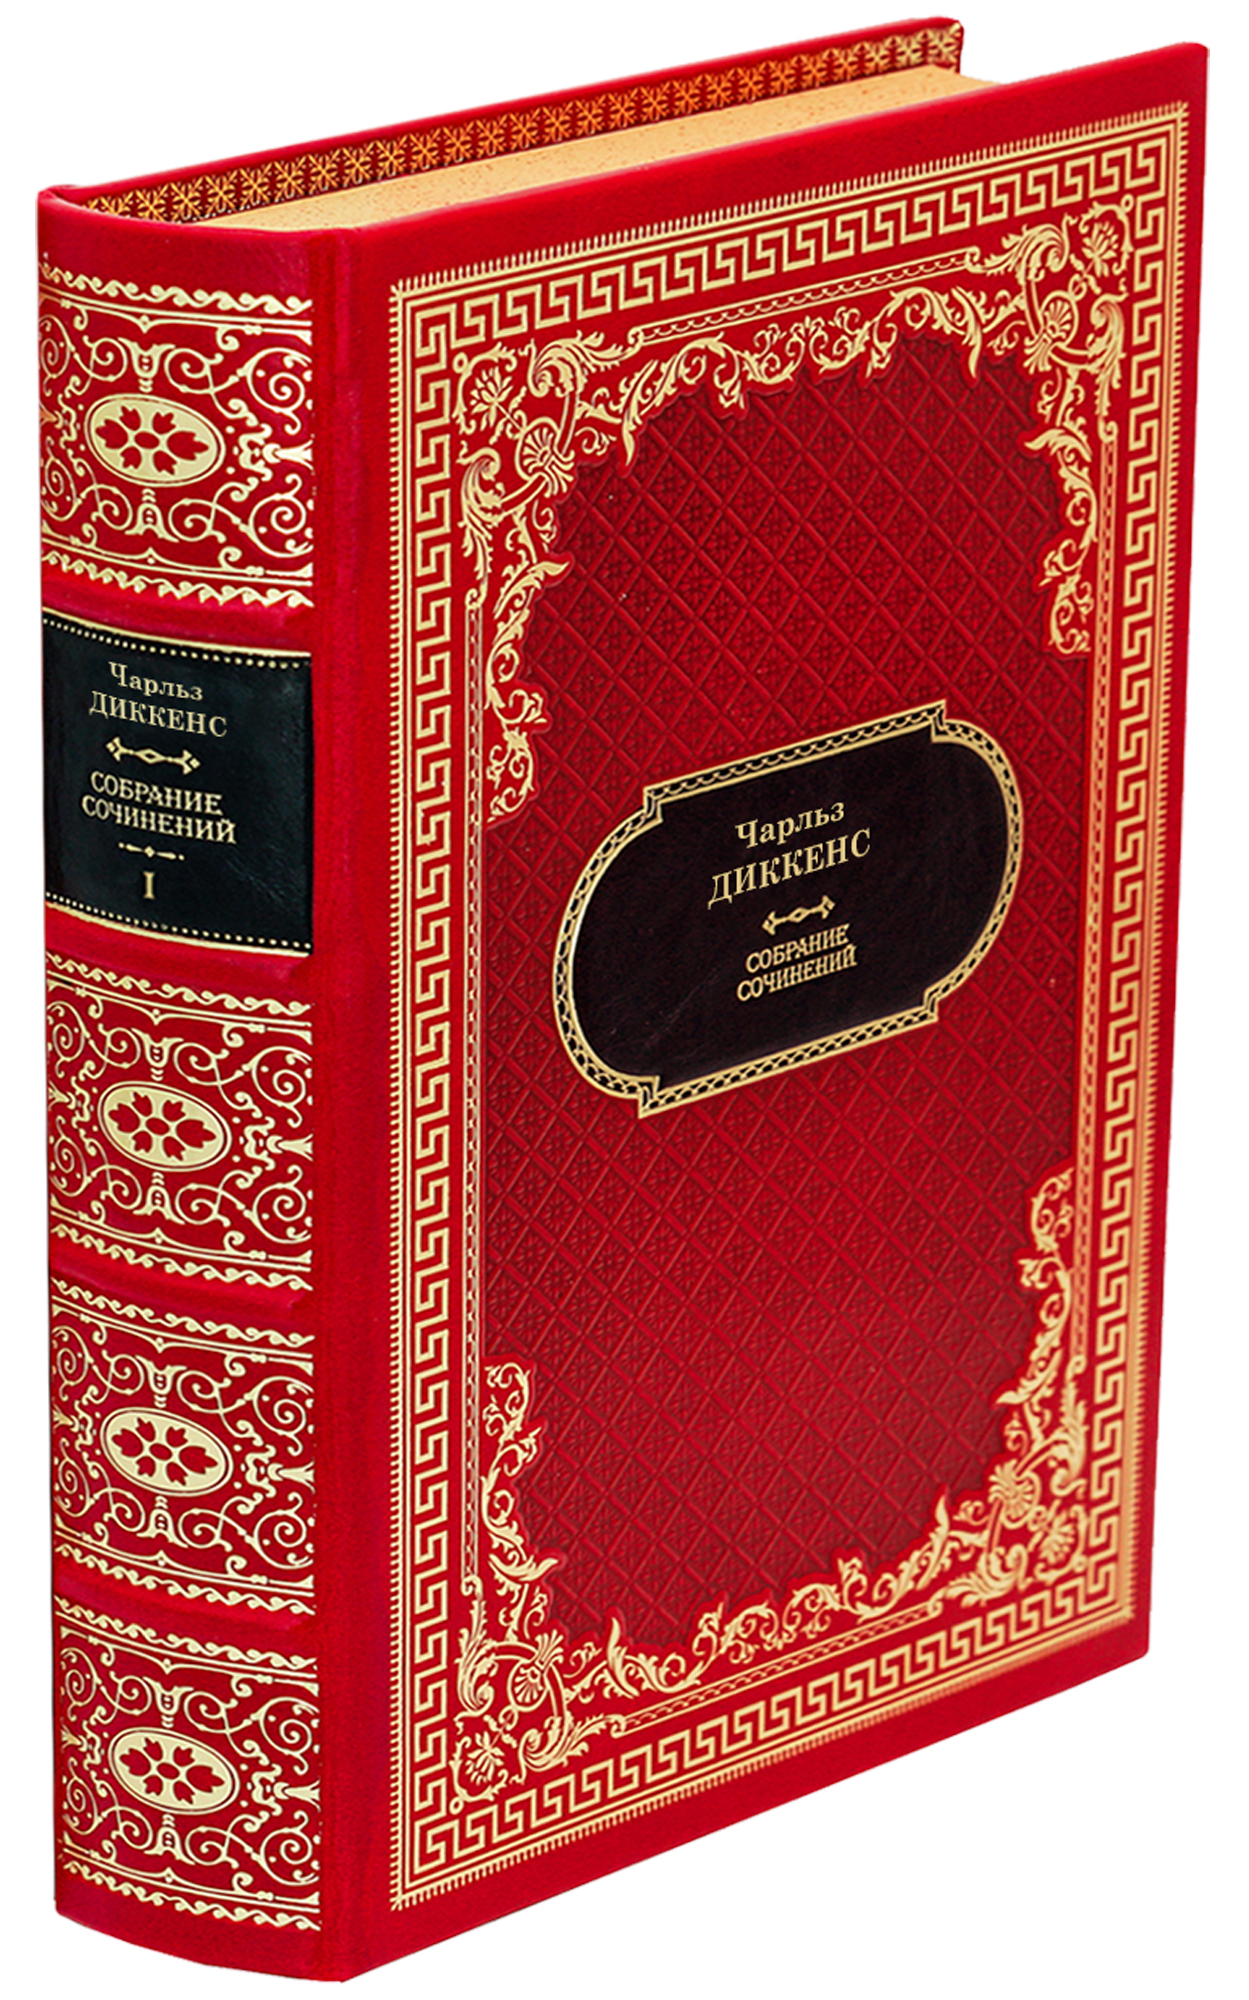 Диккенс Ч. Собрание сочинений в 30 томах в дизайне «Ампир»